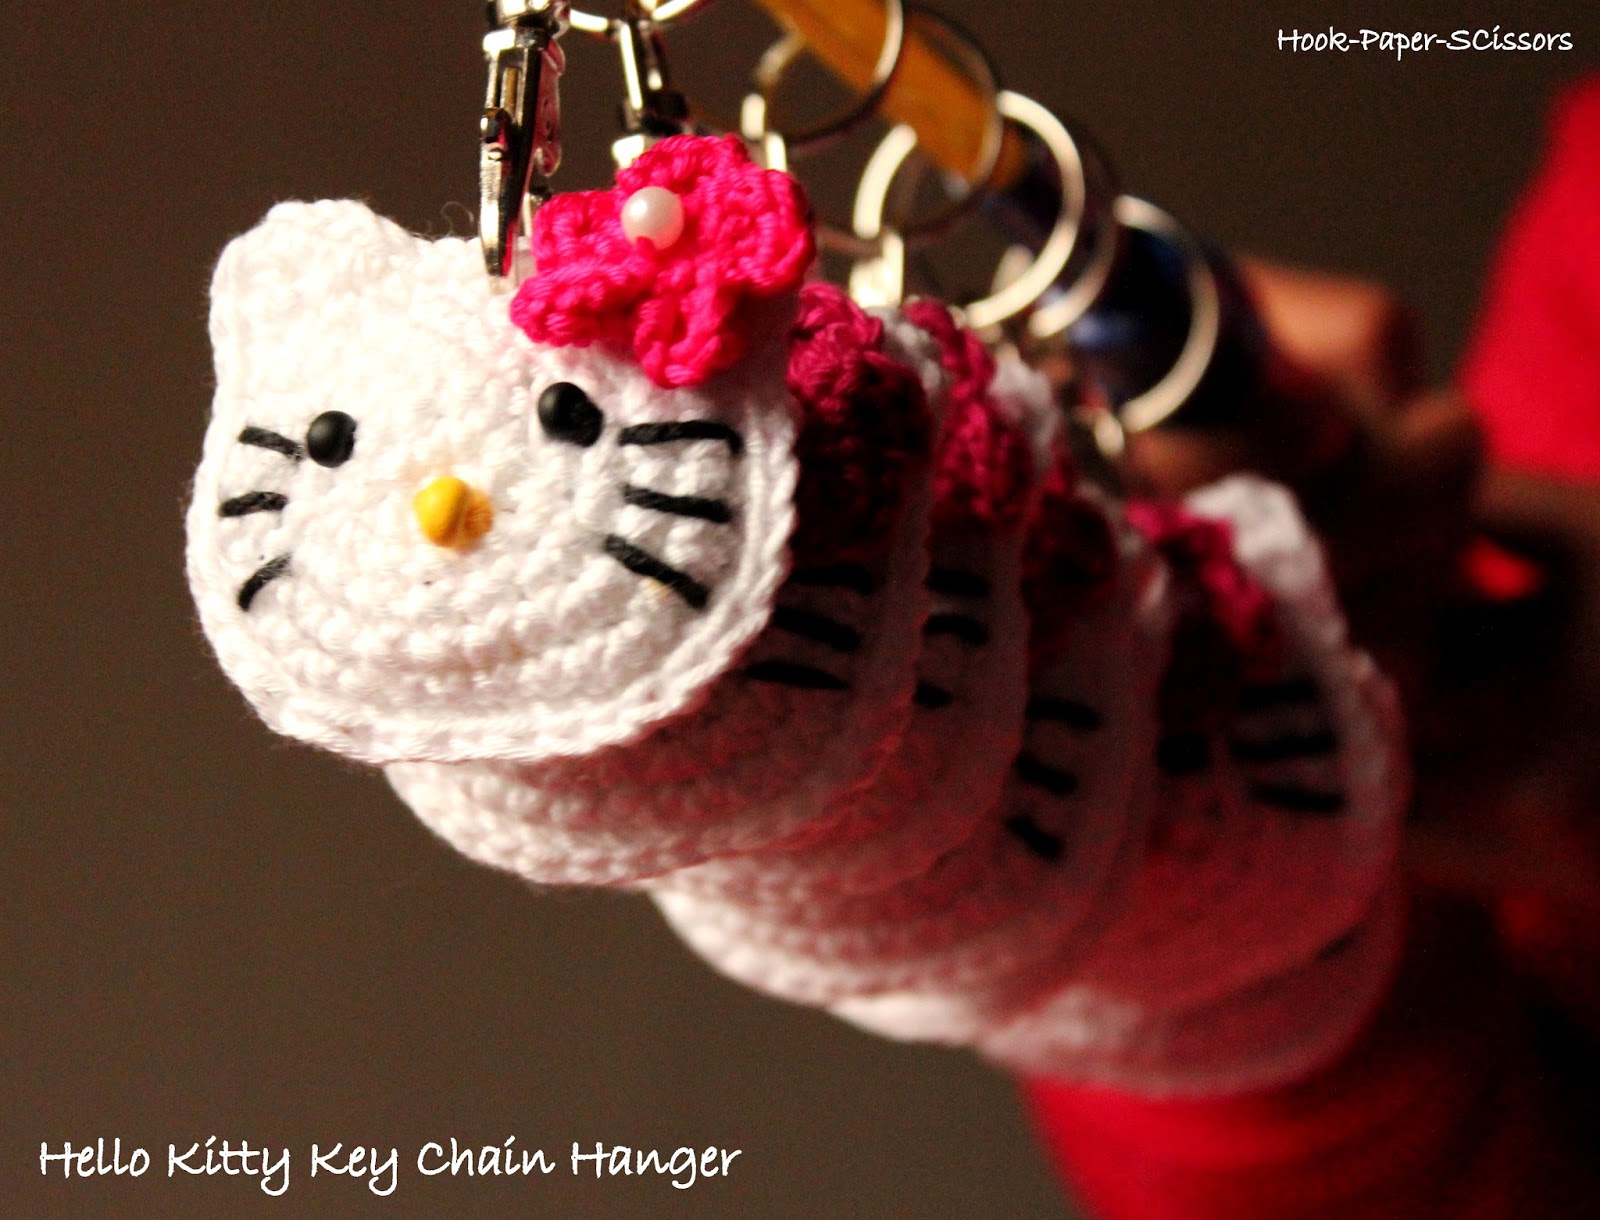 Hook-Paper-Scissors: Crochet Hello Kitty Key Chain Hanger with Pattern